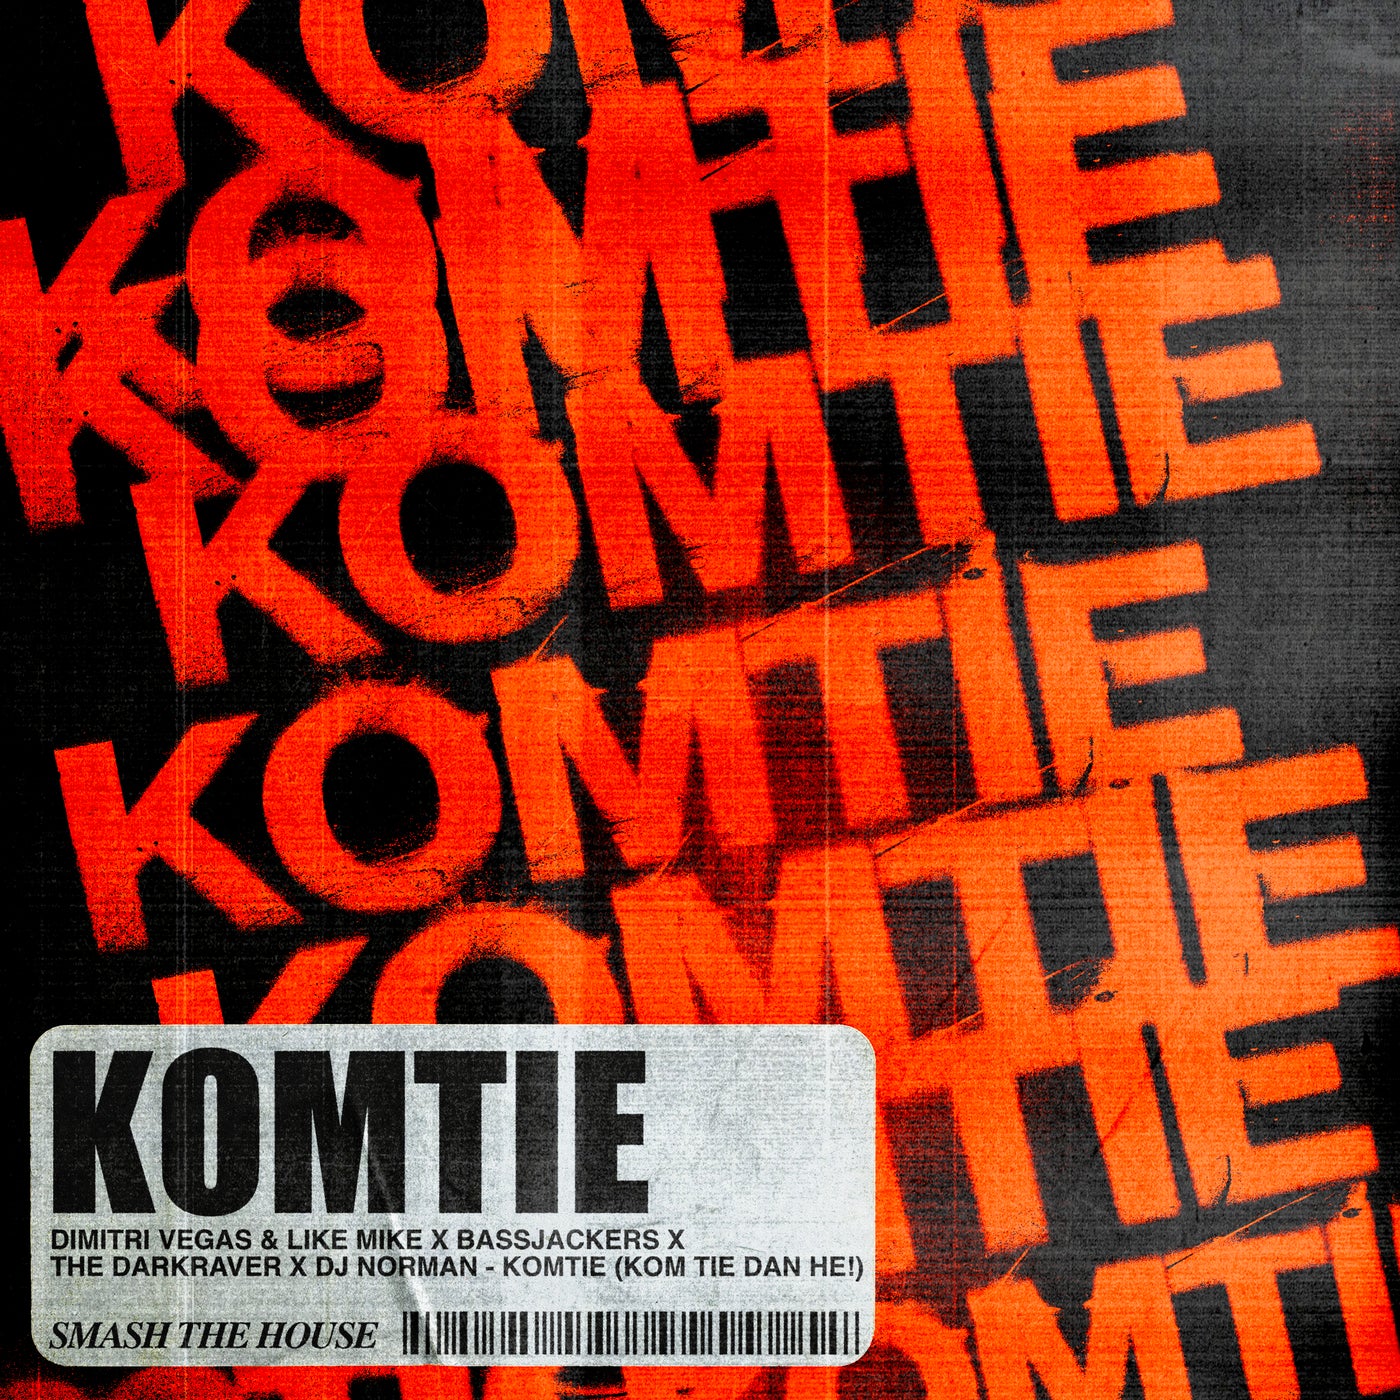 Komtie (Kom Tie Dan He!) (Extended Mix)